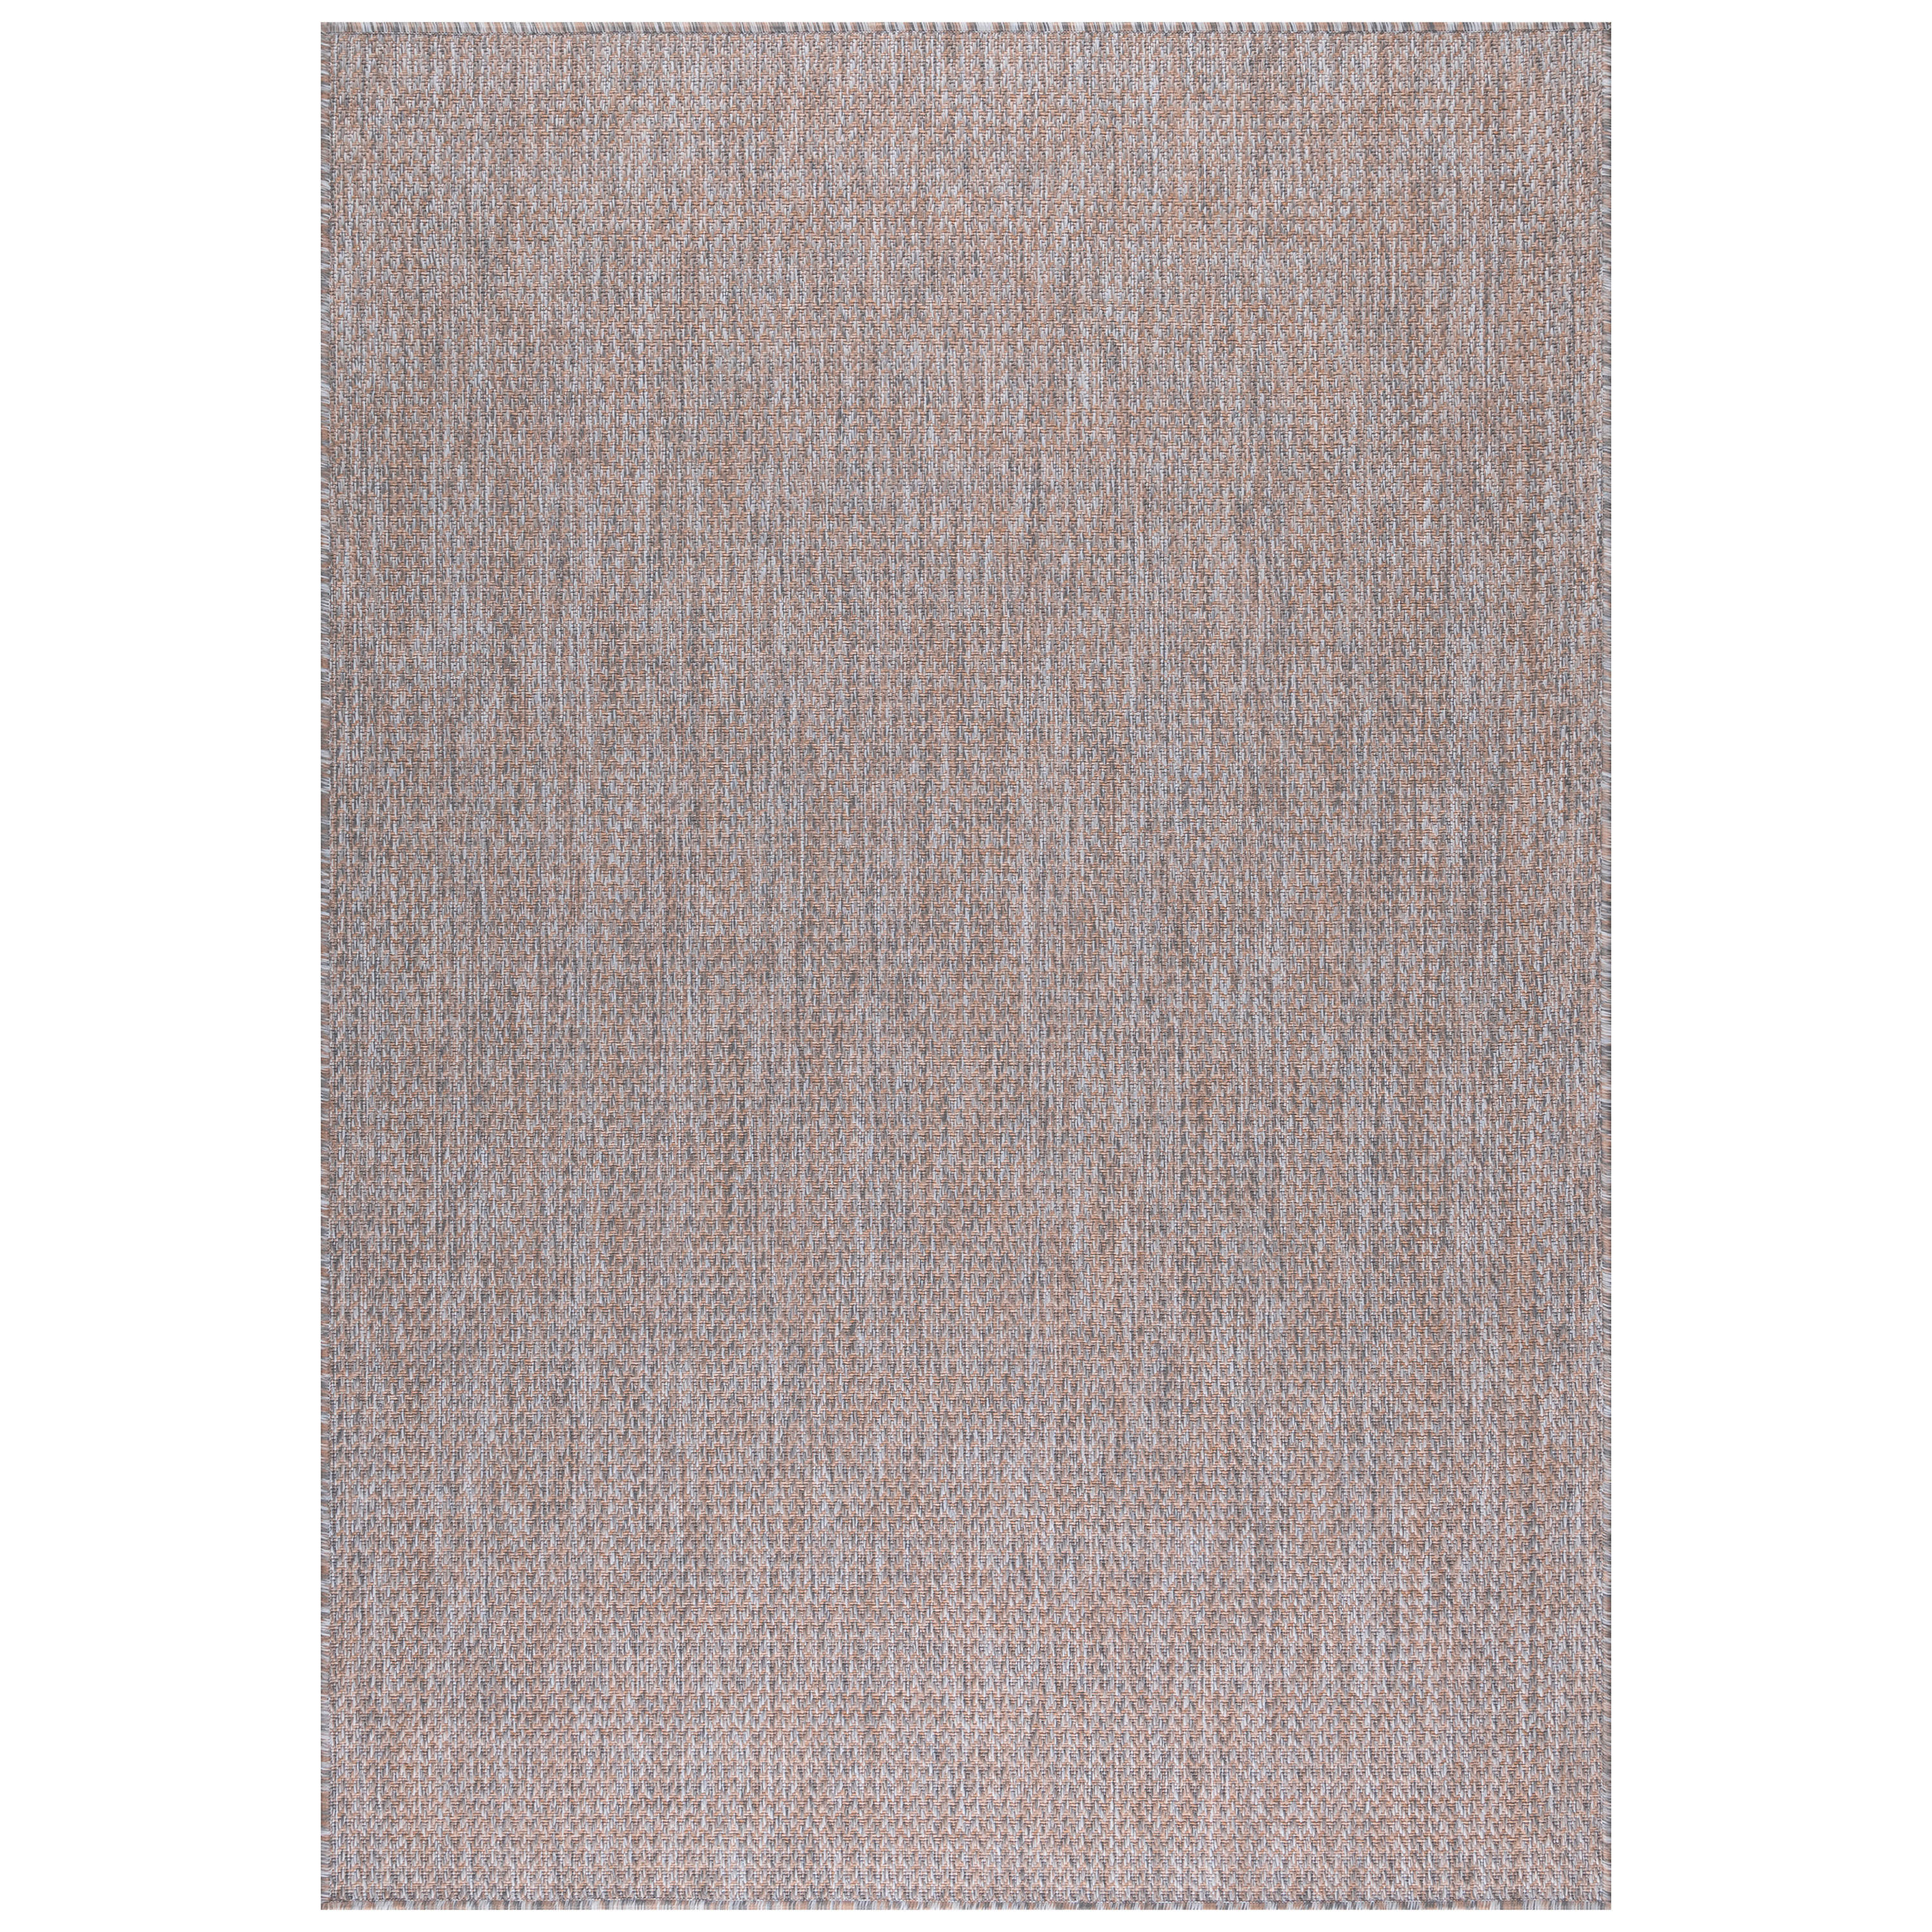 In- und Outdoorteppich 200/290 cm Zagora  - Beige/Rosa, Basics, Textil (200/290cm) - Novel